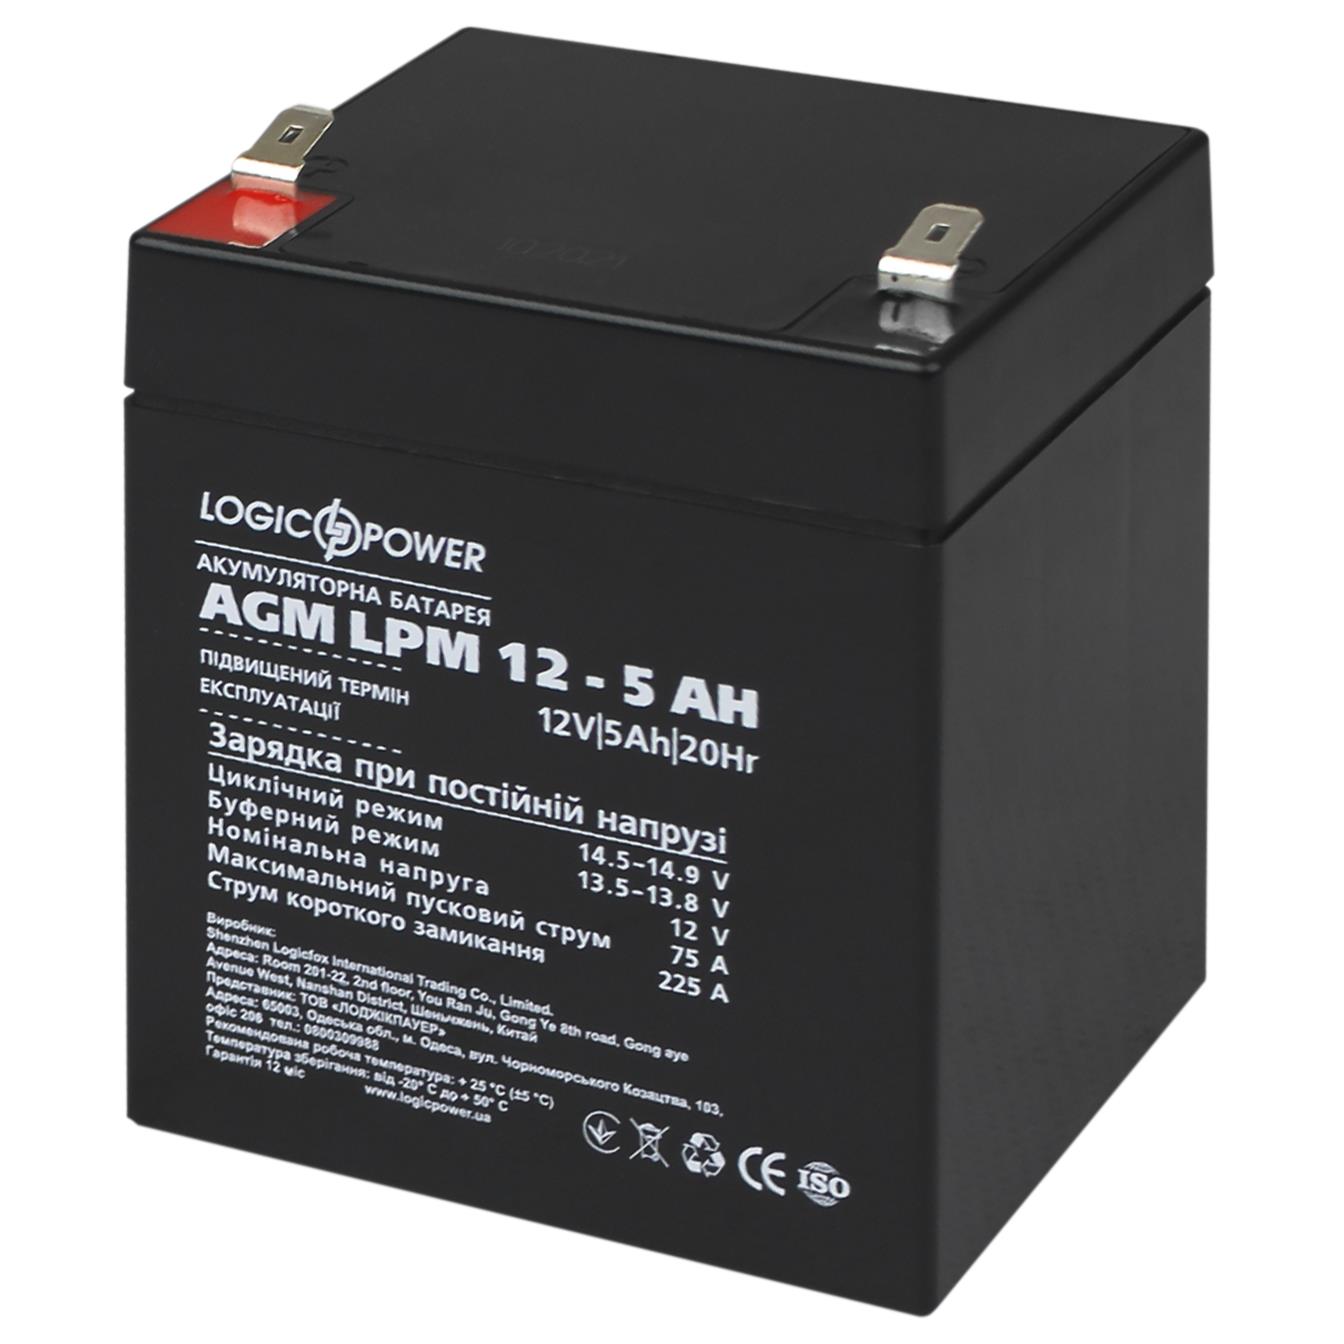 Аккумулятор свинцово-кислотный LogicPower AGM LPM 12V - 5 Ah (3861) в интернет-магазине, главное фото